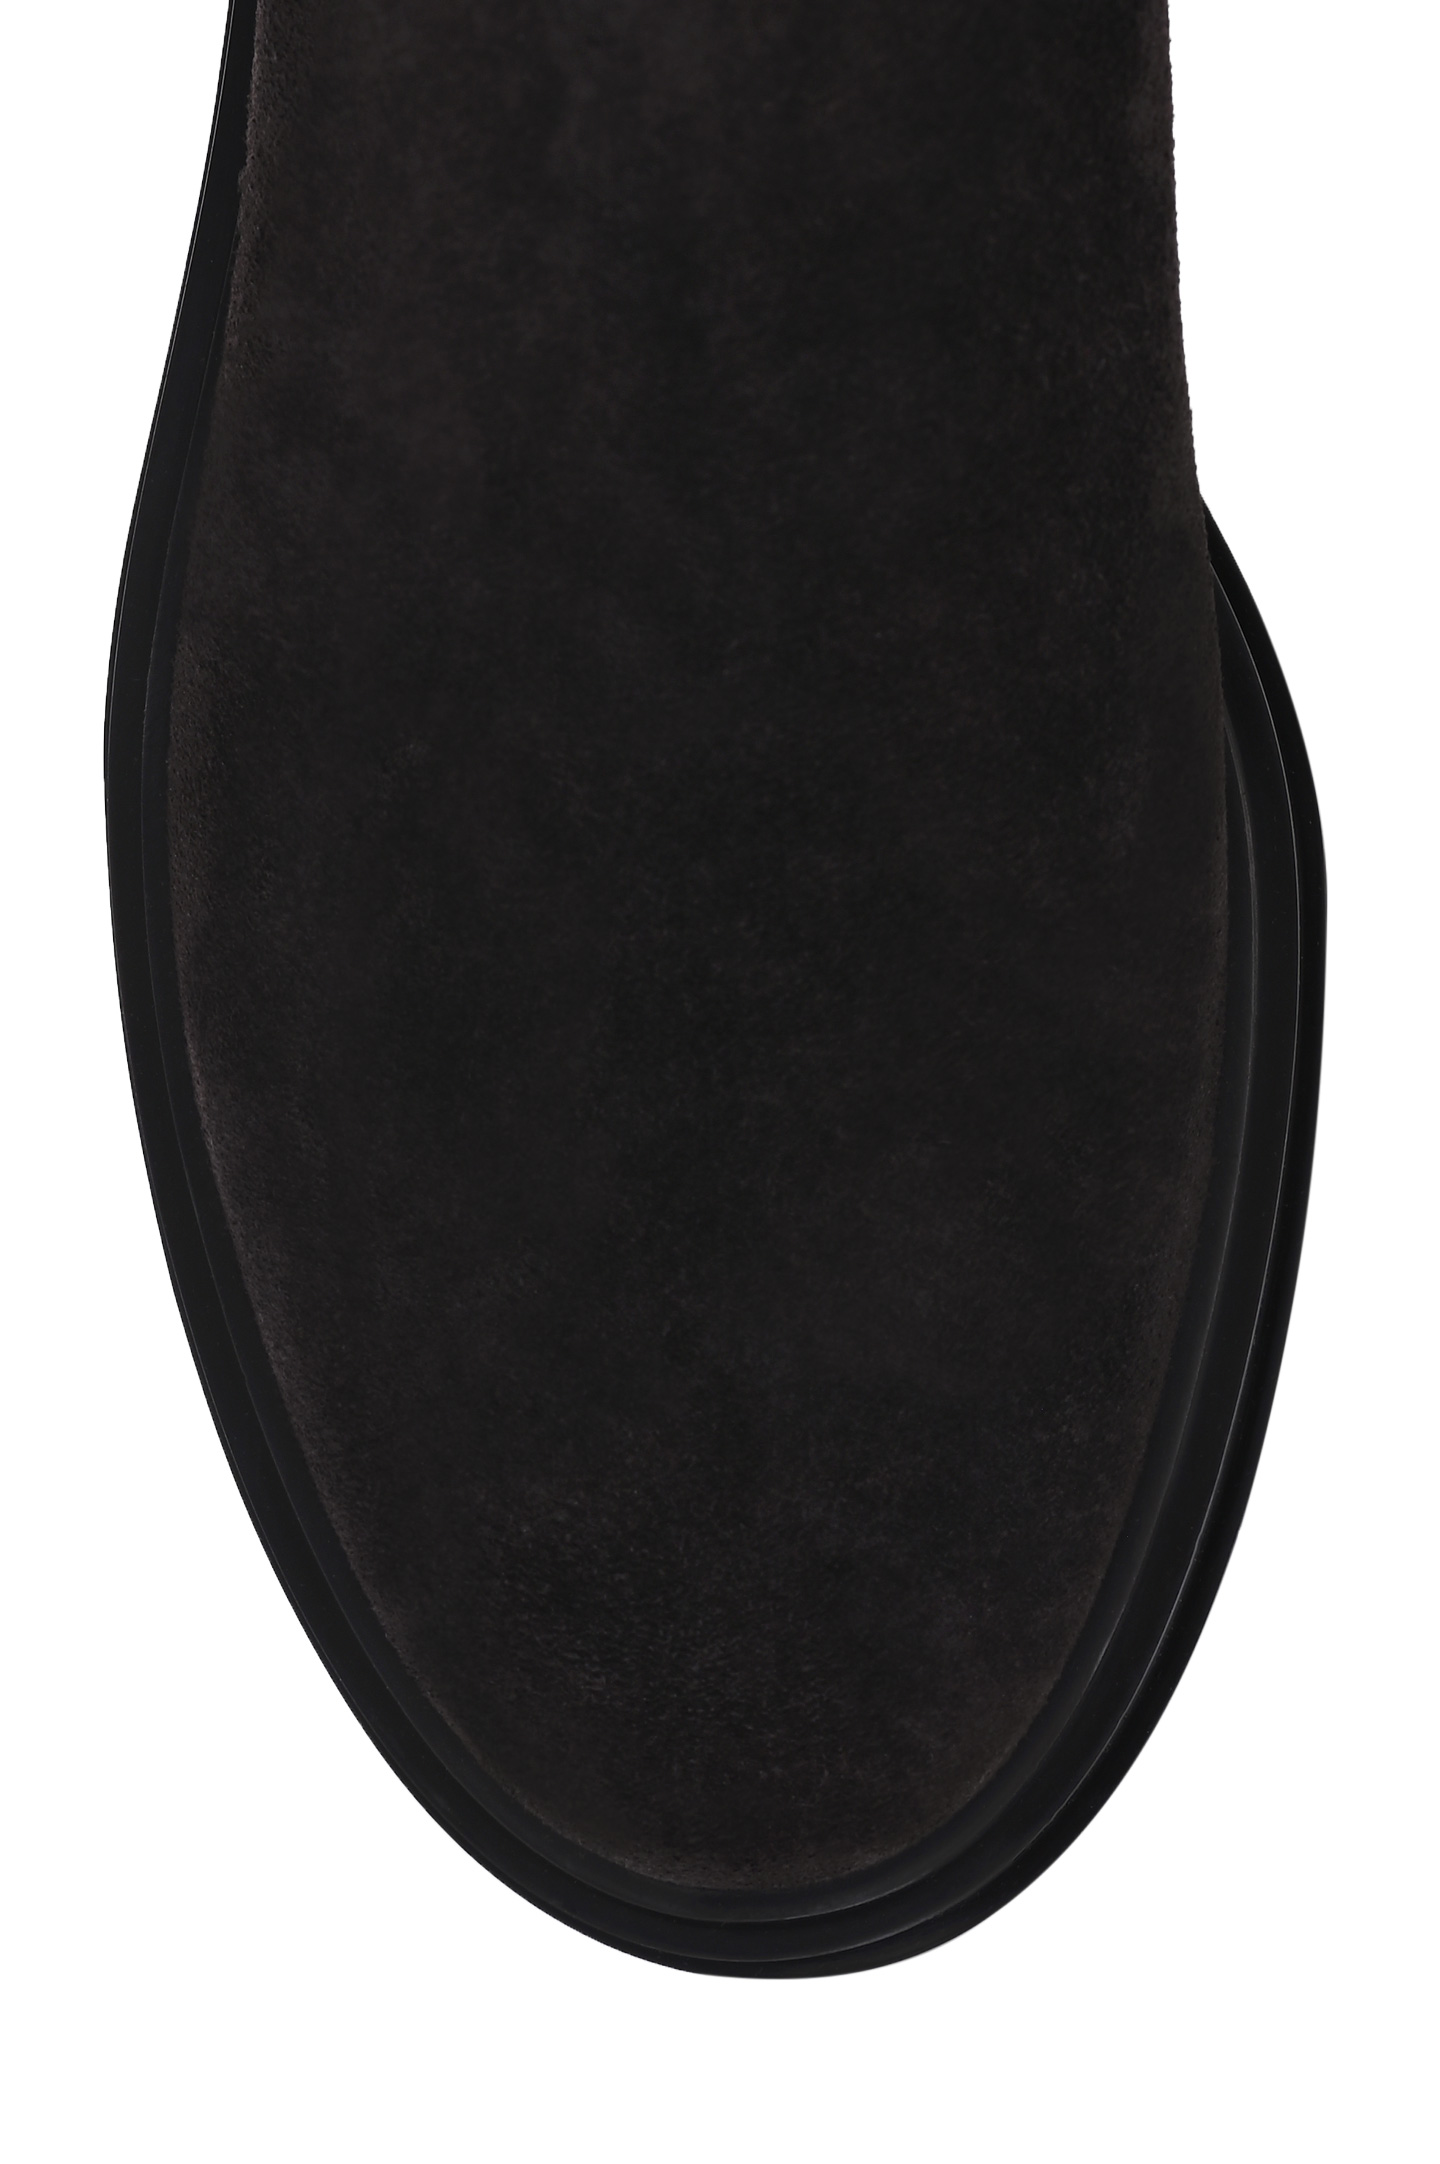 Ботинки GIANVITO ROSSI G73054.20GOM.SUEMOKA, цвет: Темно-коричневый, Женский